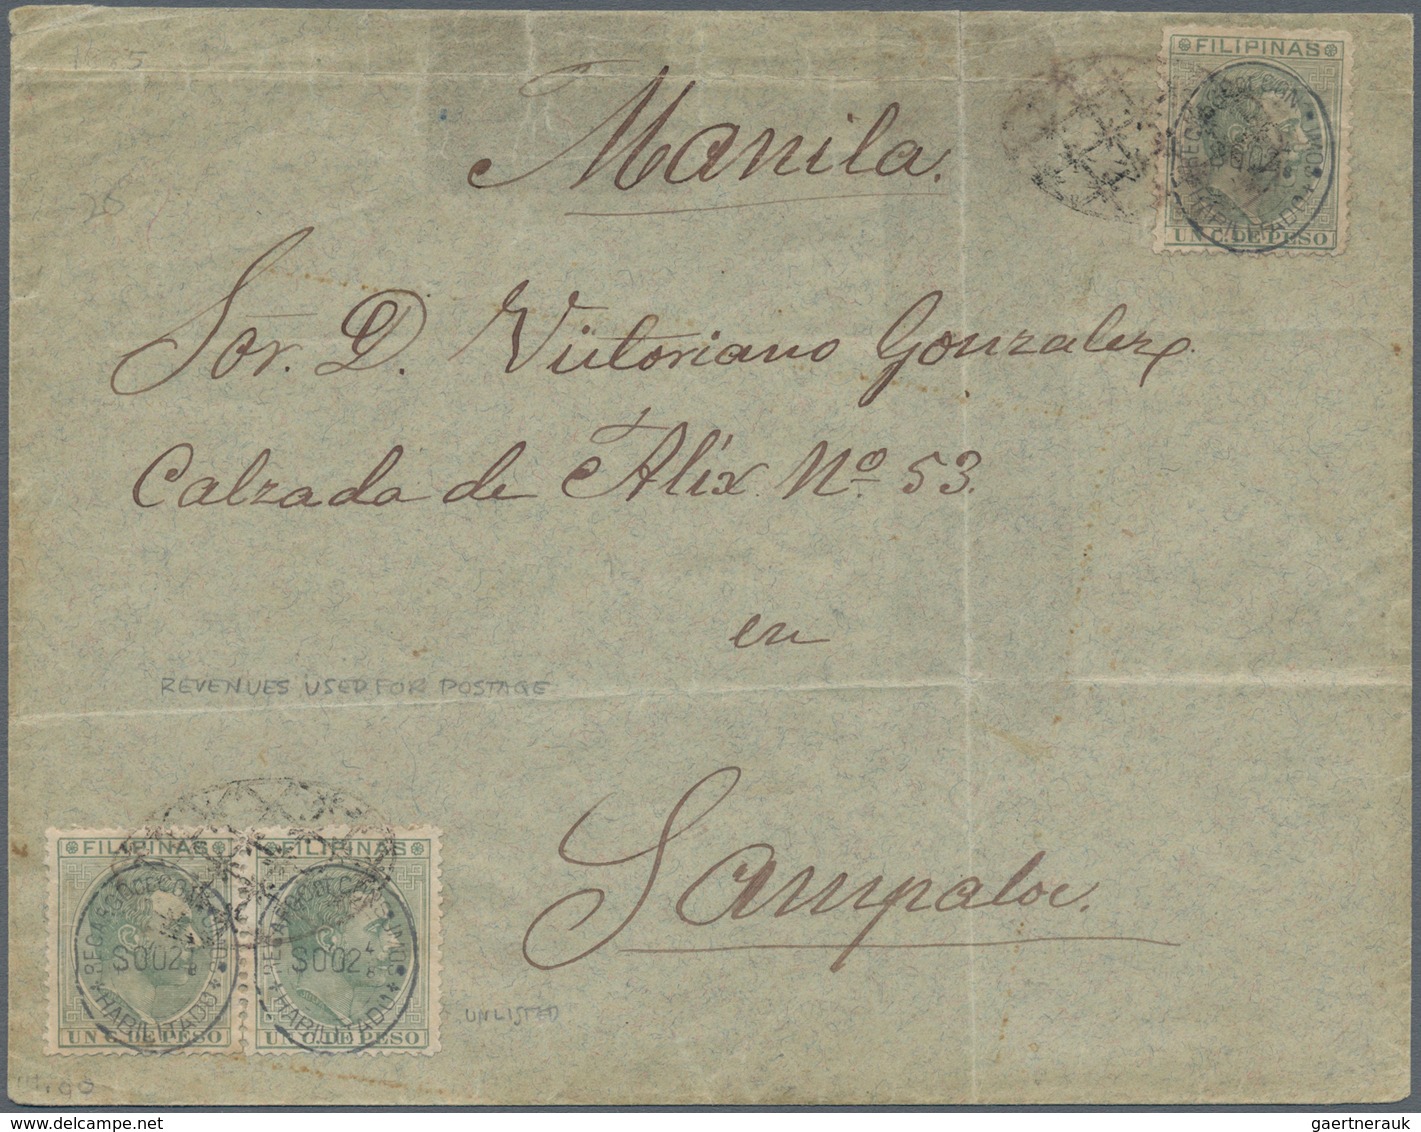 00408 Philippinen: 1880 (ca.), Fiscals Used For Postage: Blue "habilitado / Recargo De Consumo S002 2 4/8" - Filippijnen